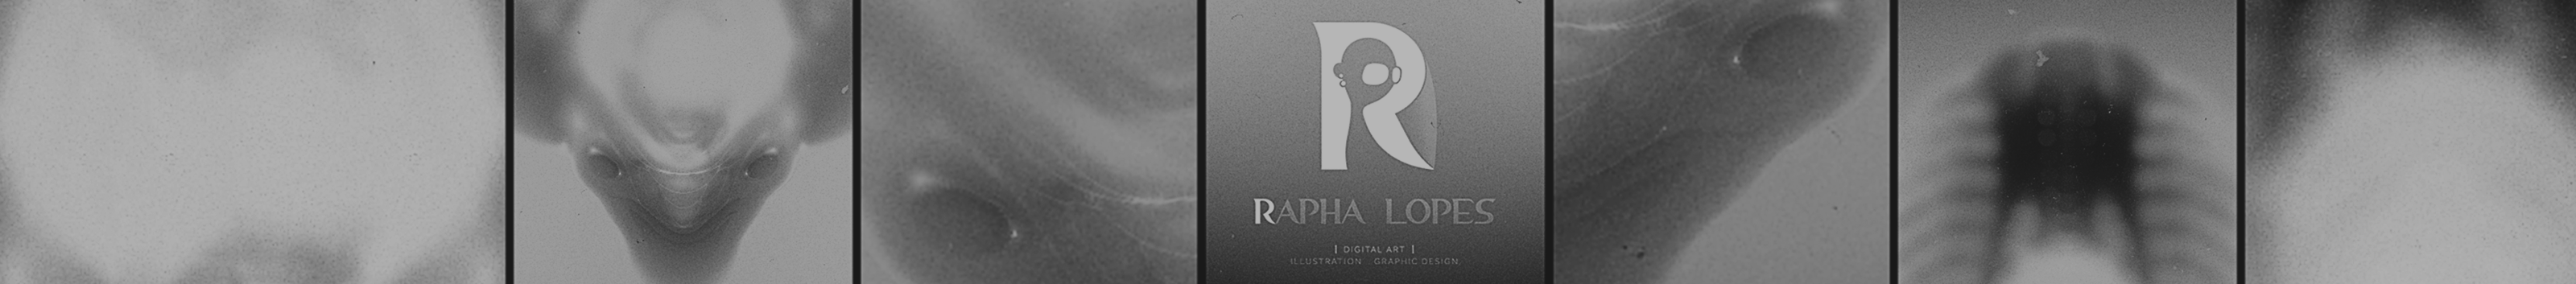 Banner de perfil de Raphael Lopes